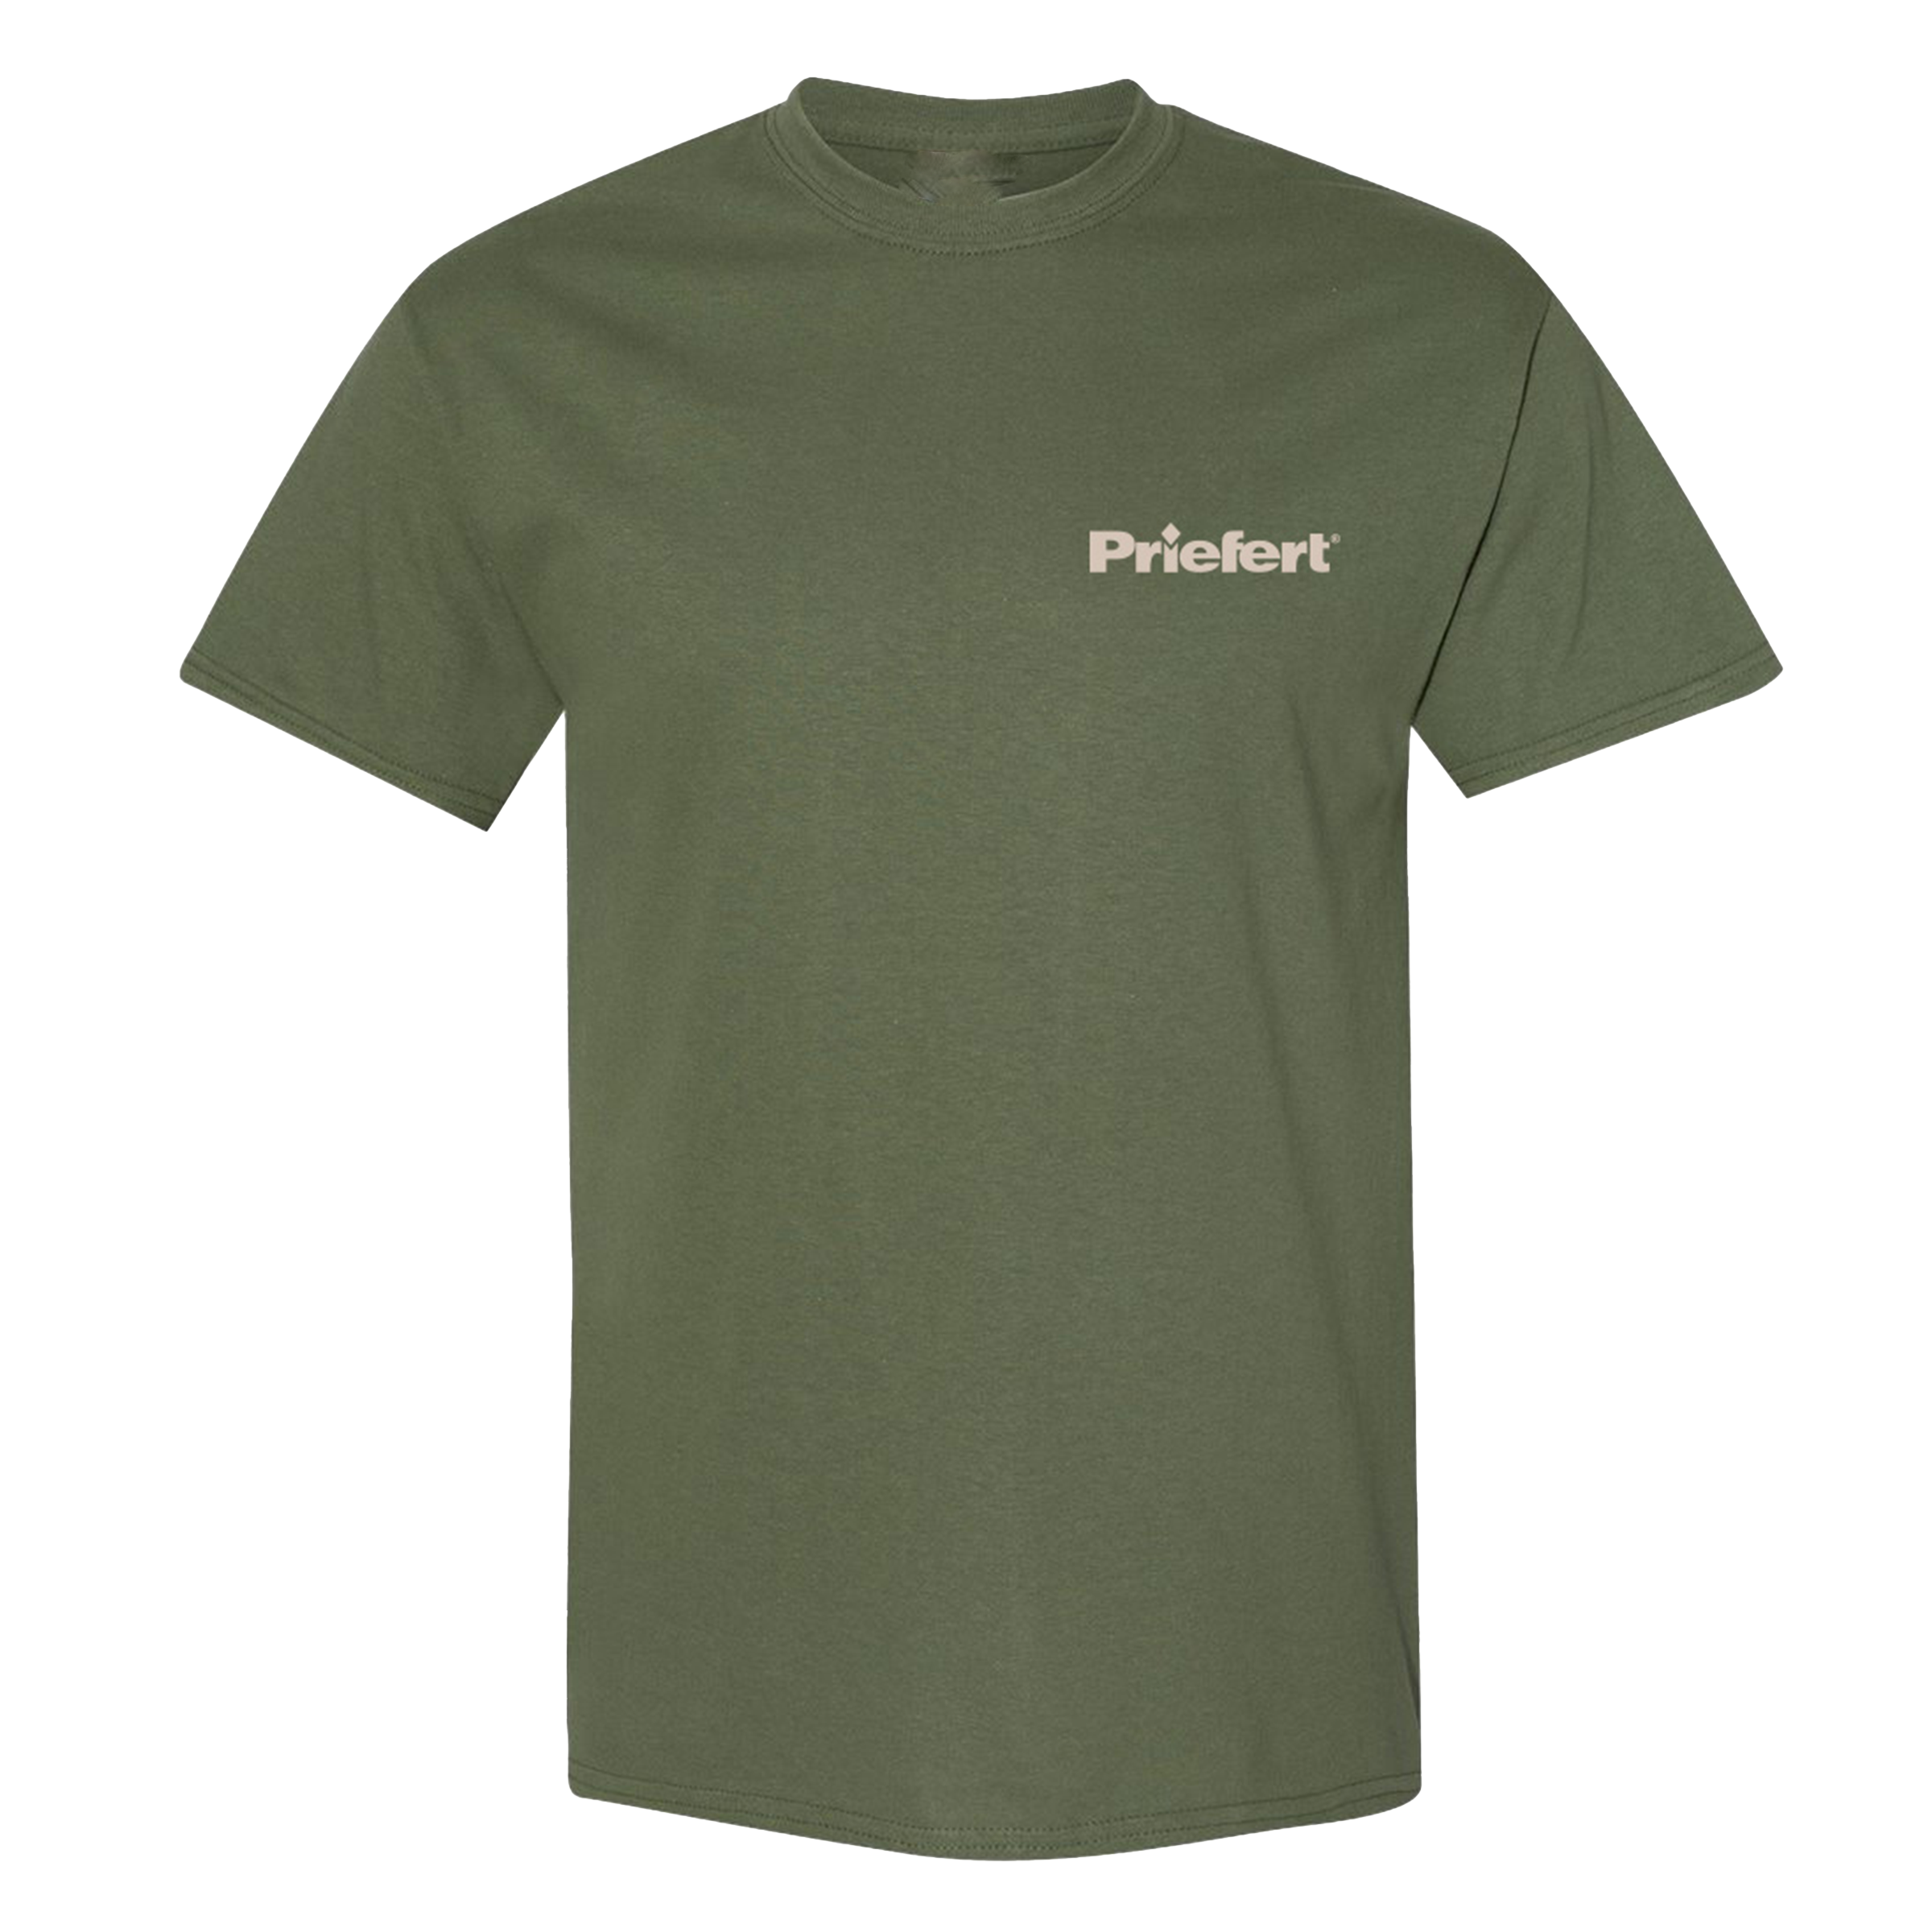 Military Green 1964 Priefert T-Shirt